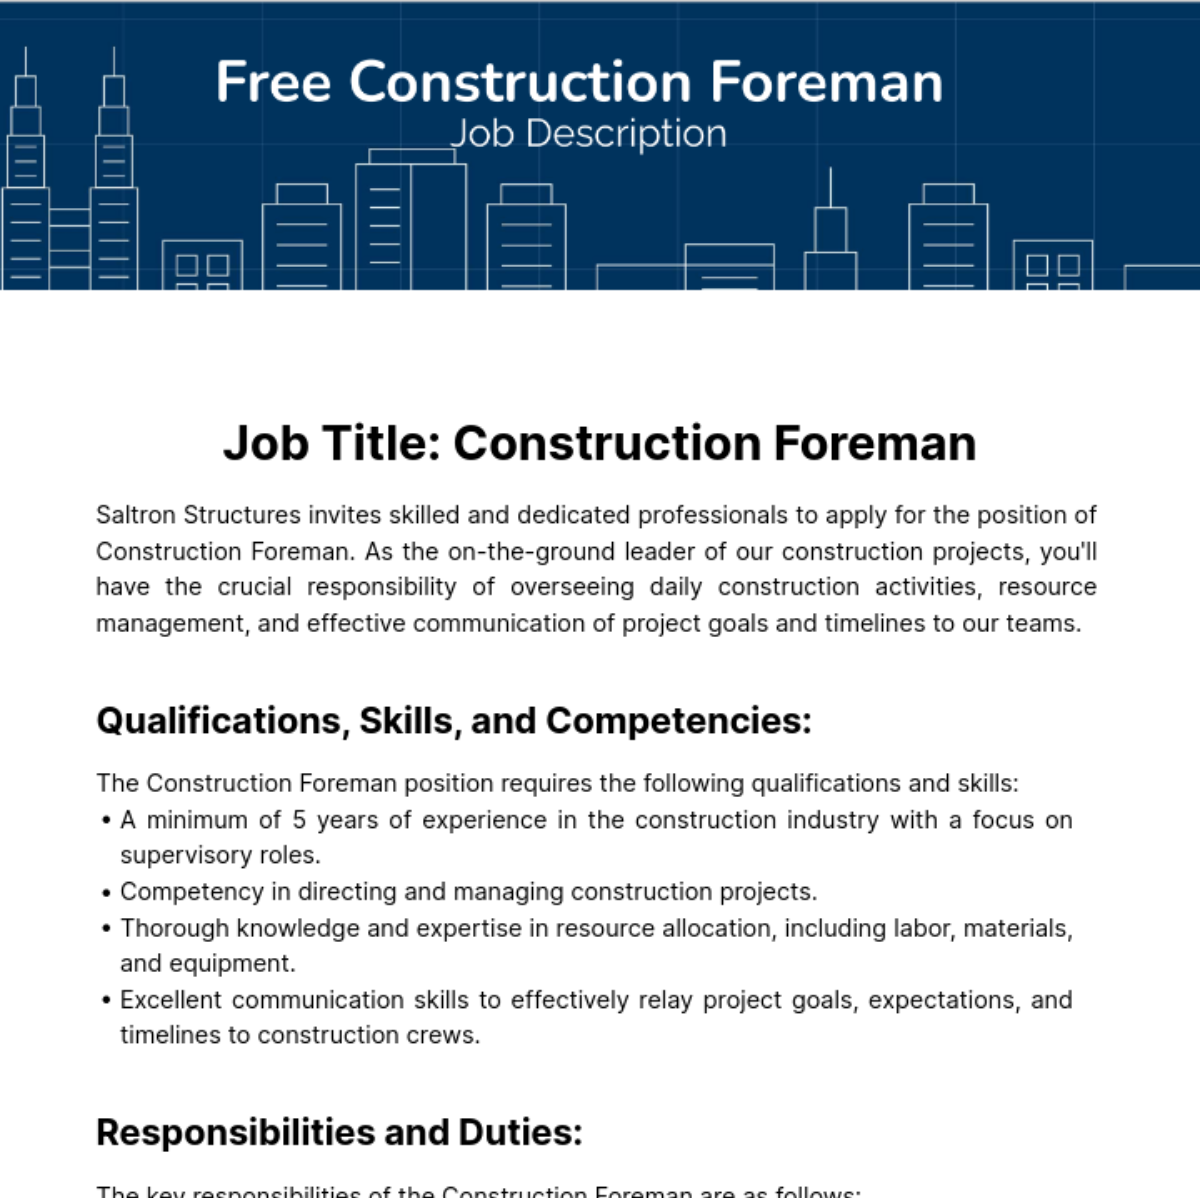 Free Construction Foreman Job Description Template